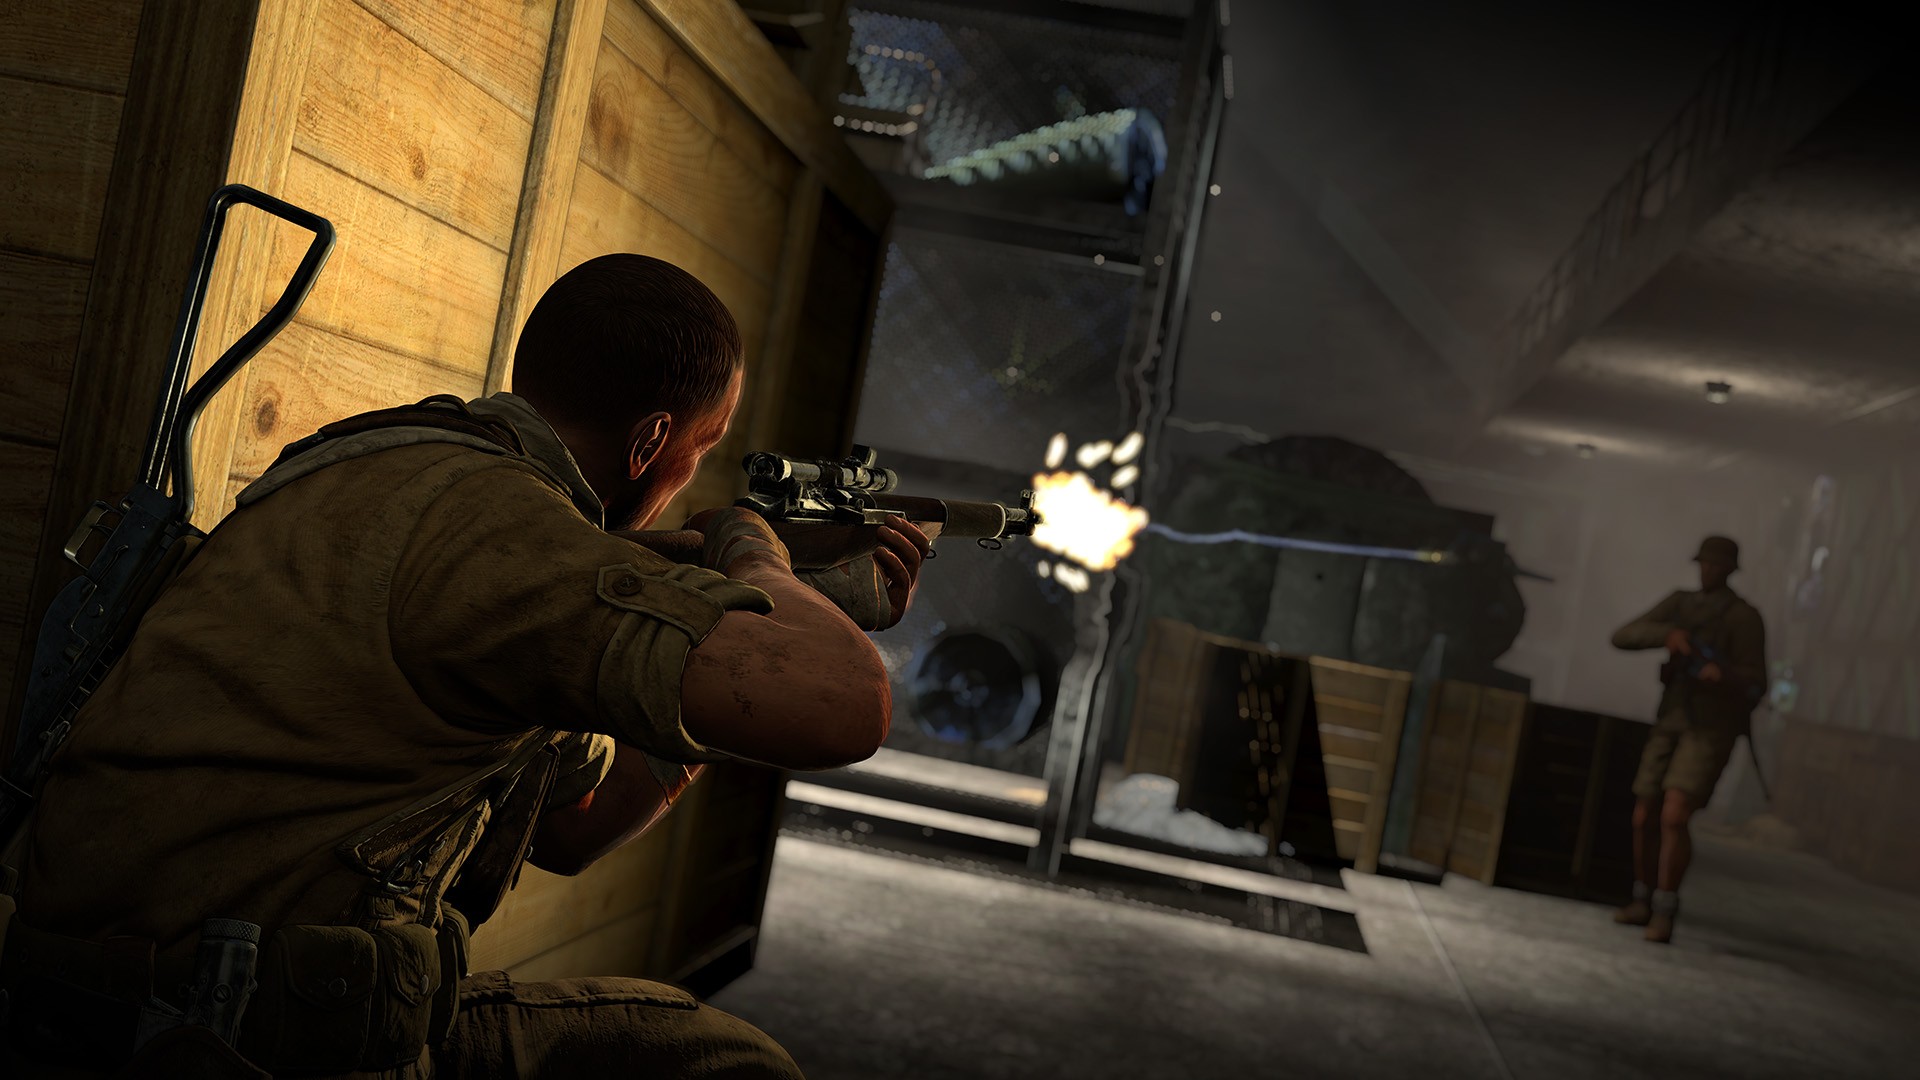 Sniper Elite 3 - Complete DLC Bundle Steam CD Key